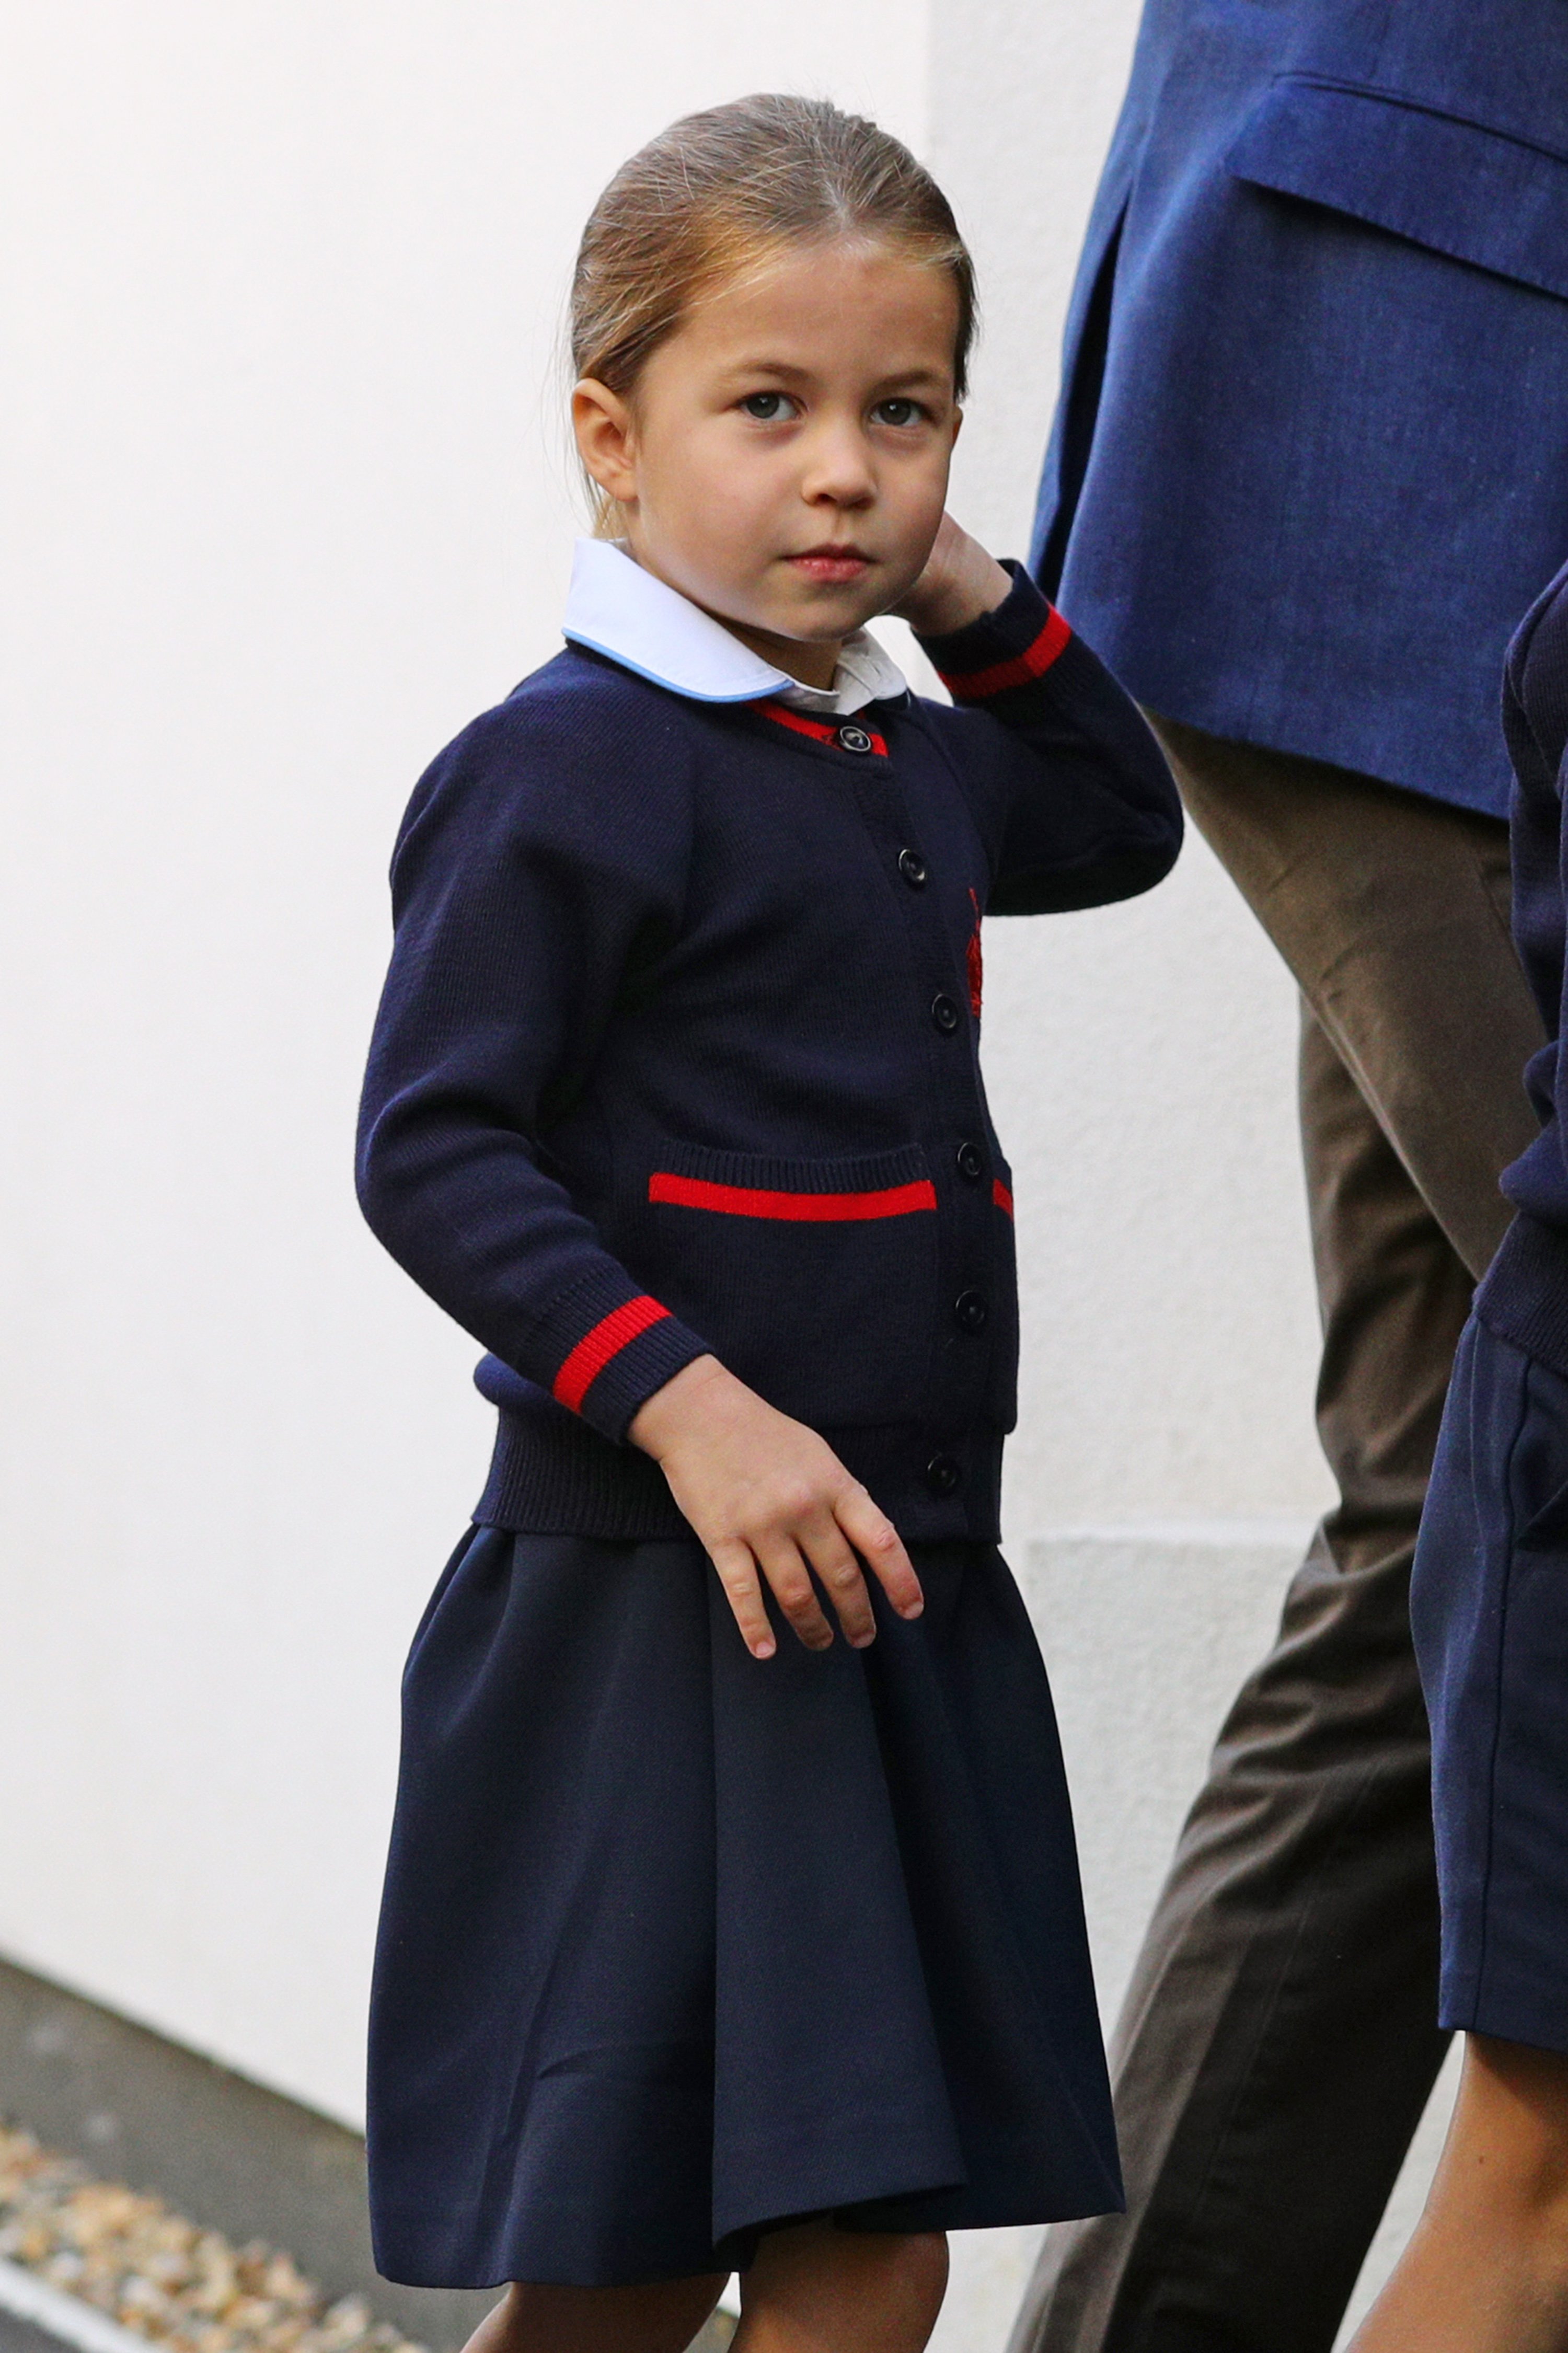 Image de la princesse Charlotte : Getty Images.